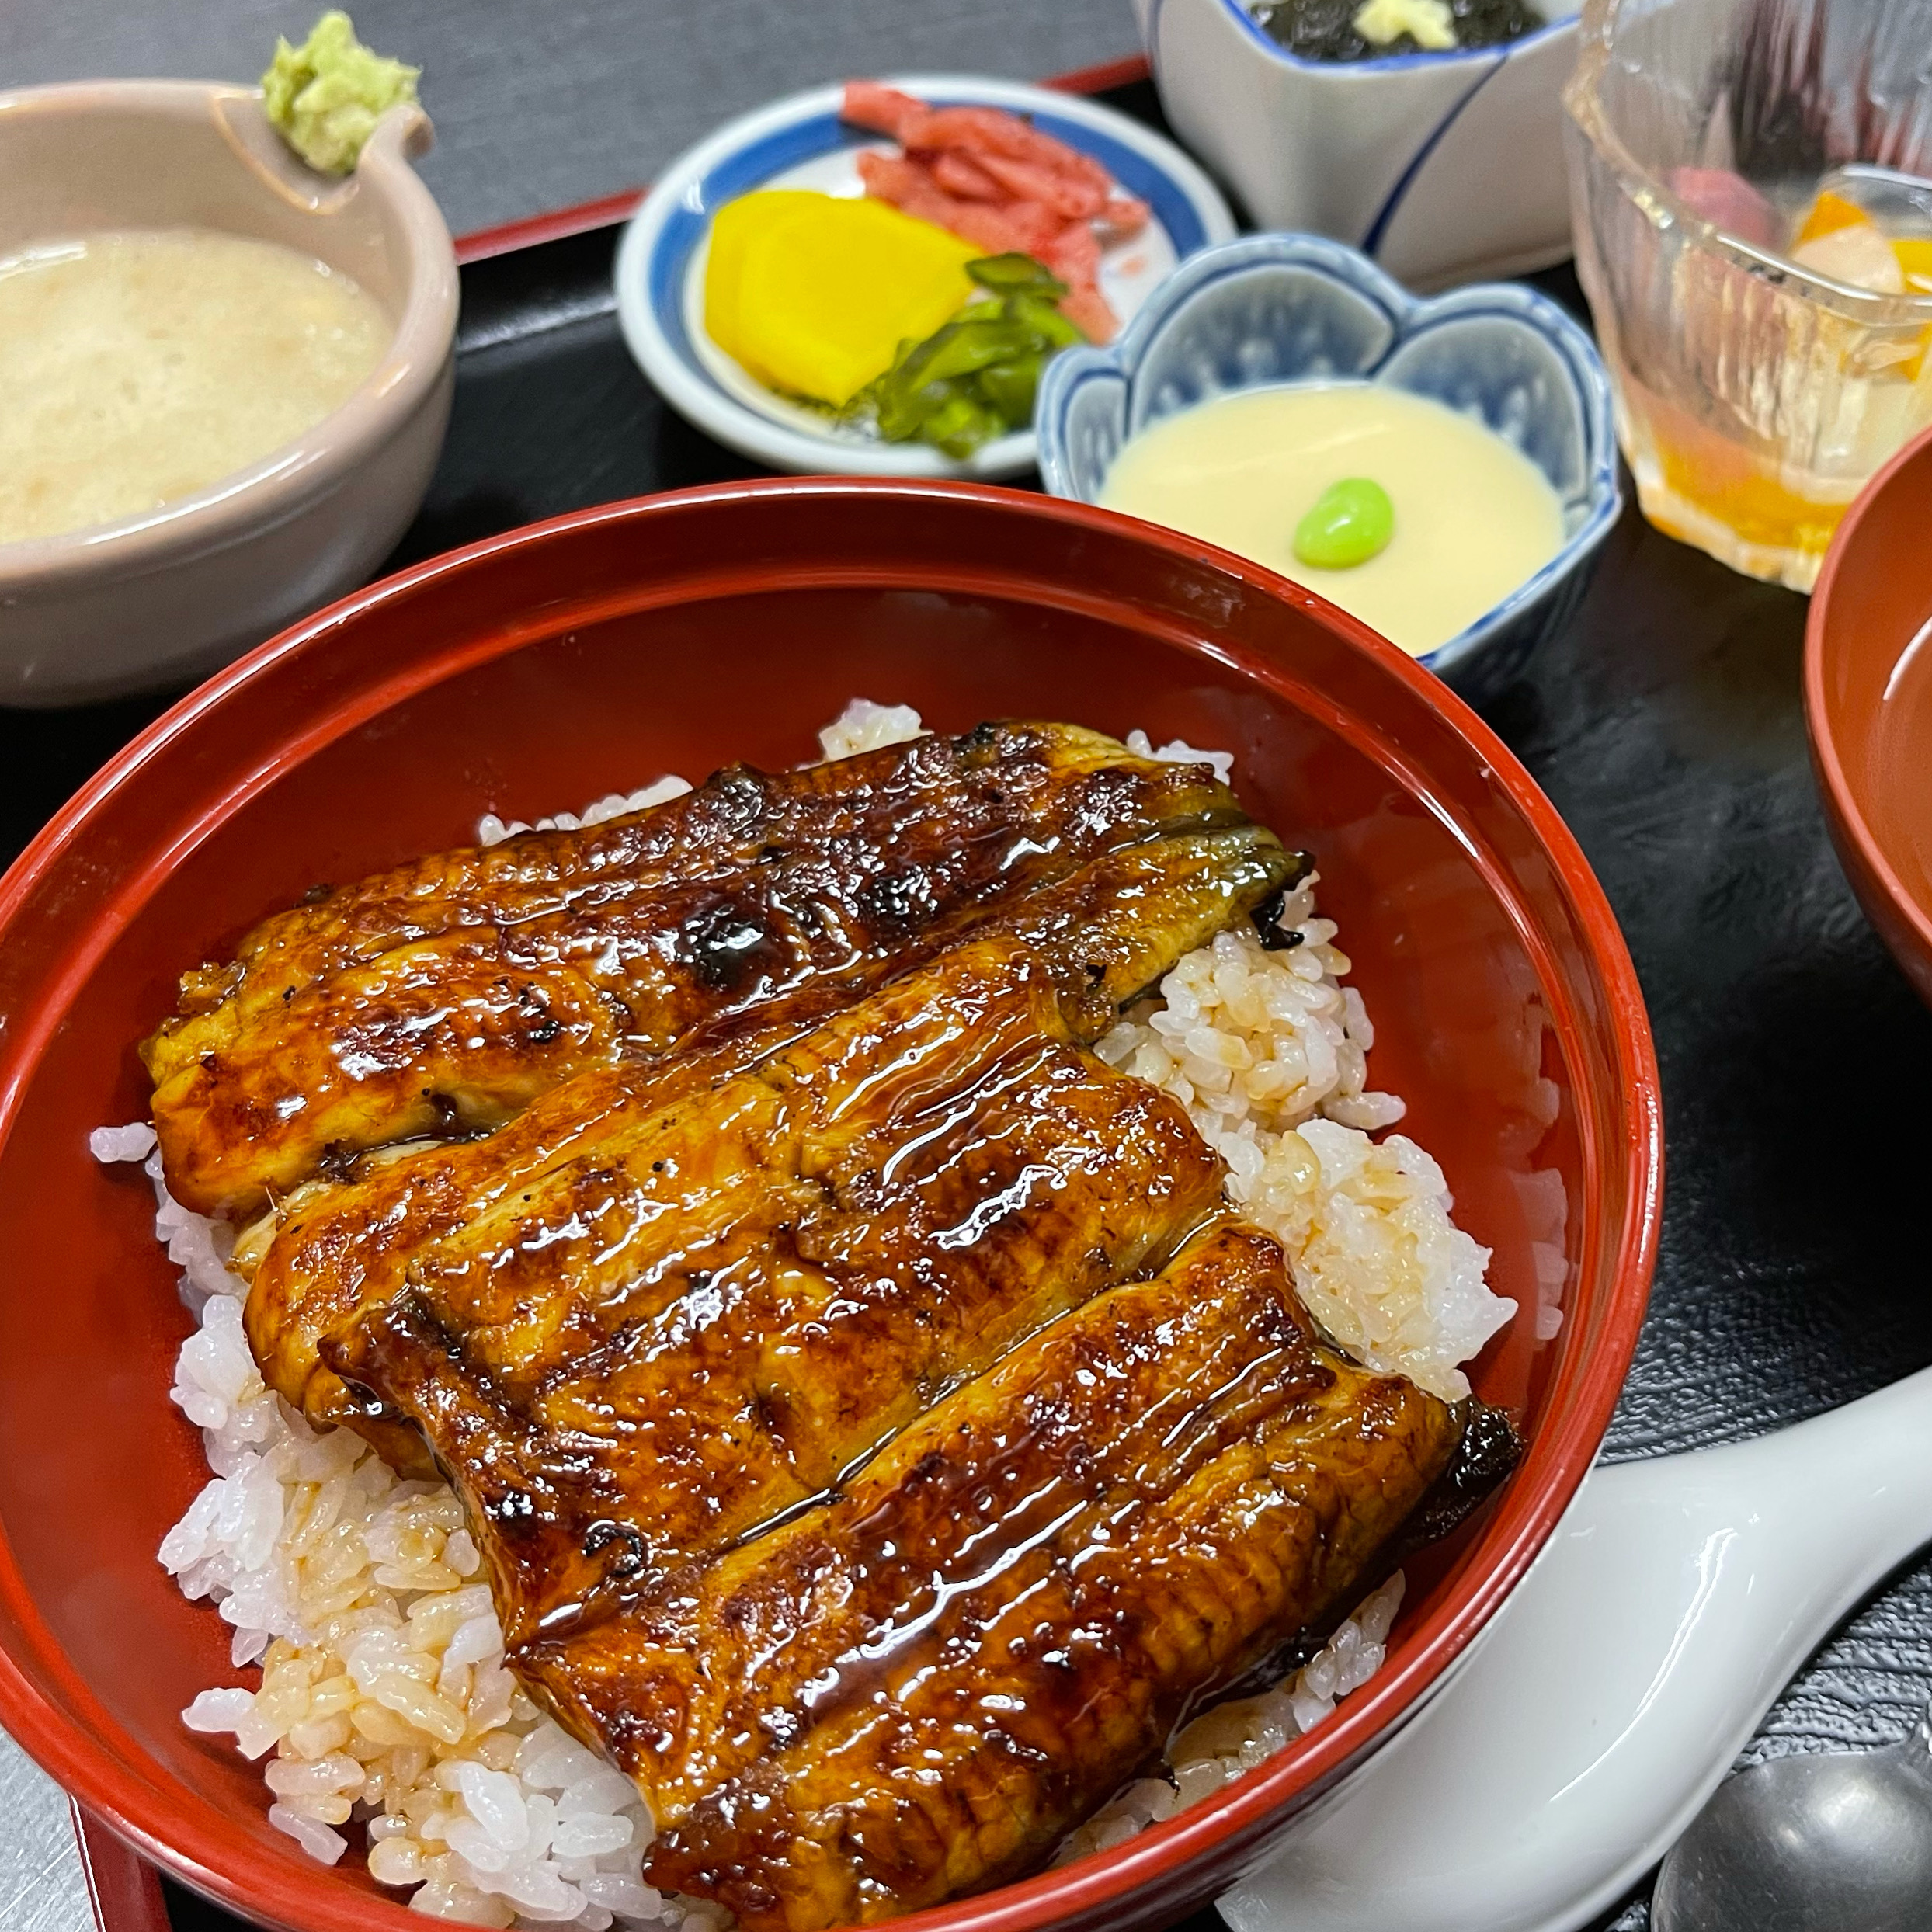 オリジナル新商品
タレ鰻獣(たれまんじゅう)
鰻のタレを皮に練り込んだ薄皮饅頭